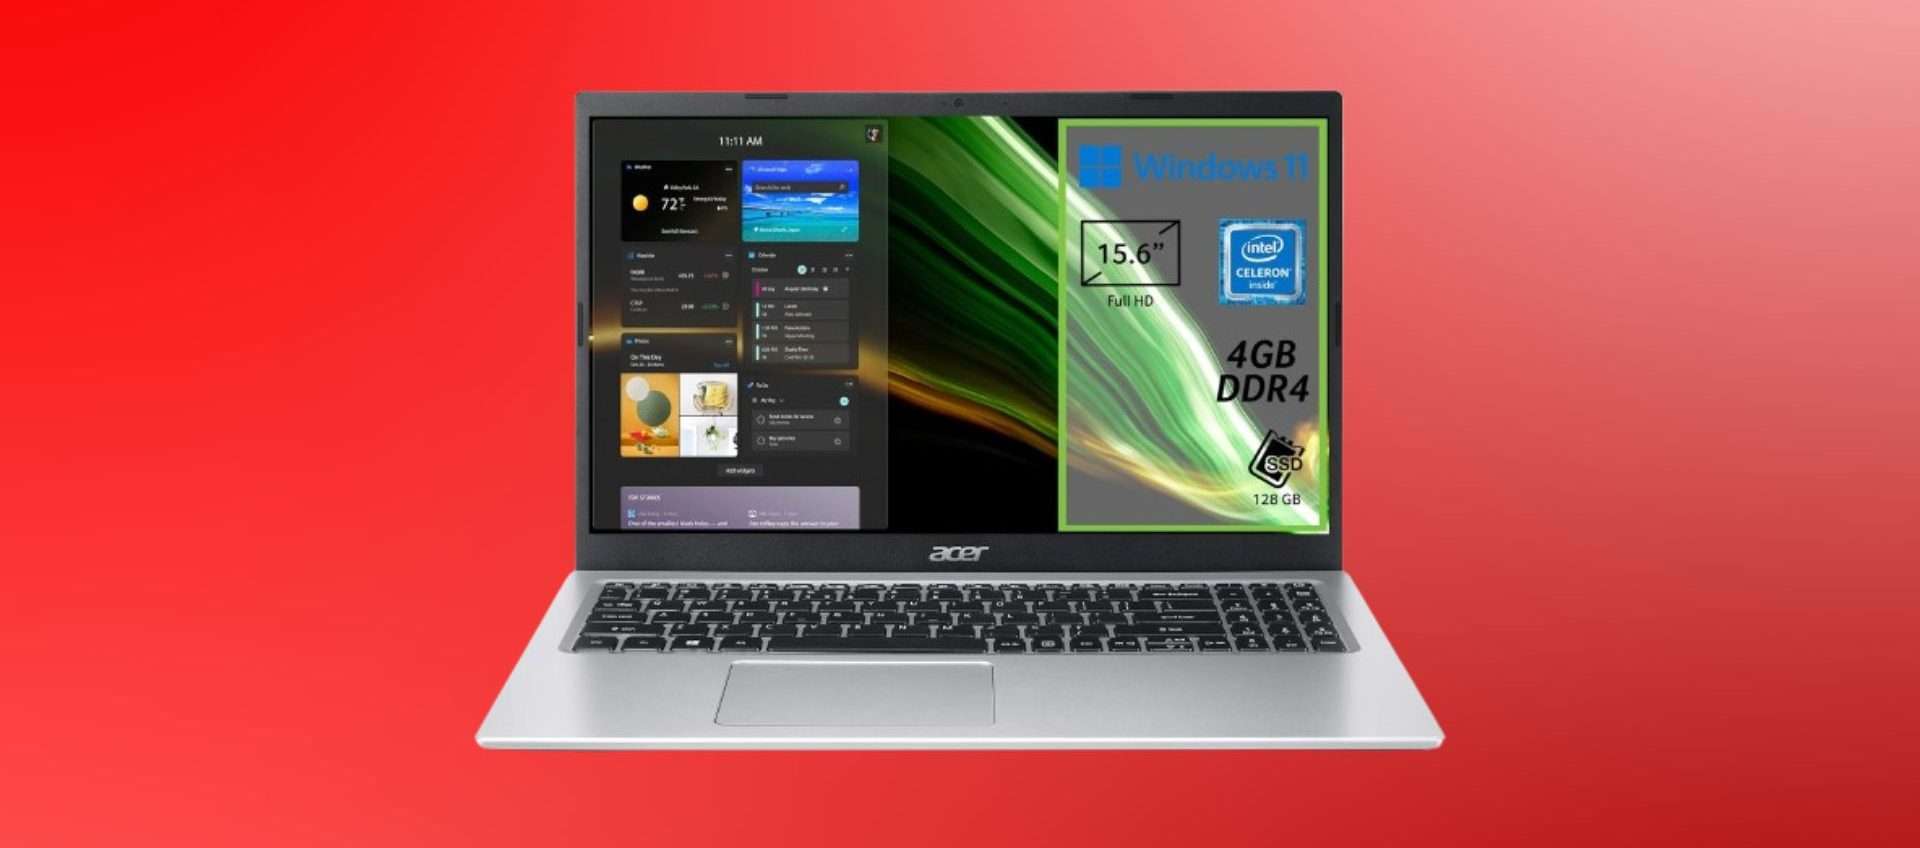 Acer Aspire 1 in offerta: il prezzo crolla sotto i 280€